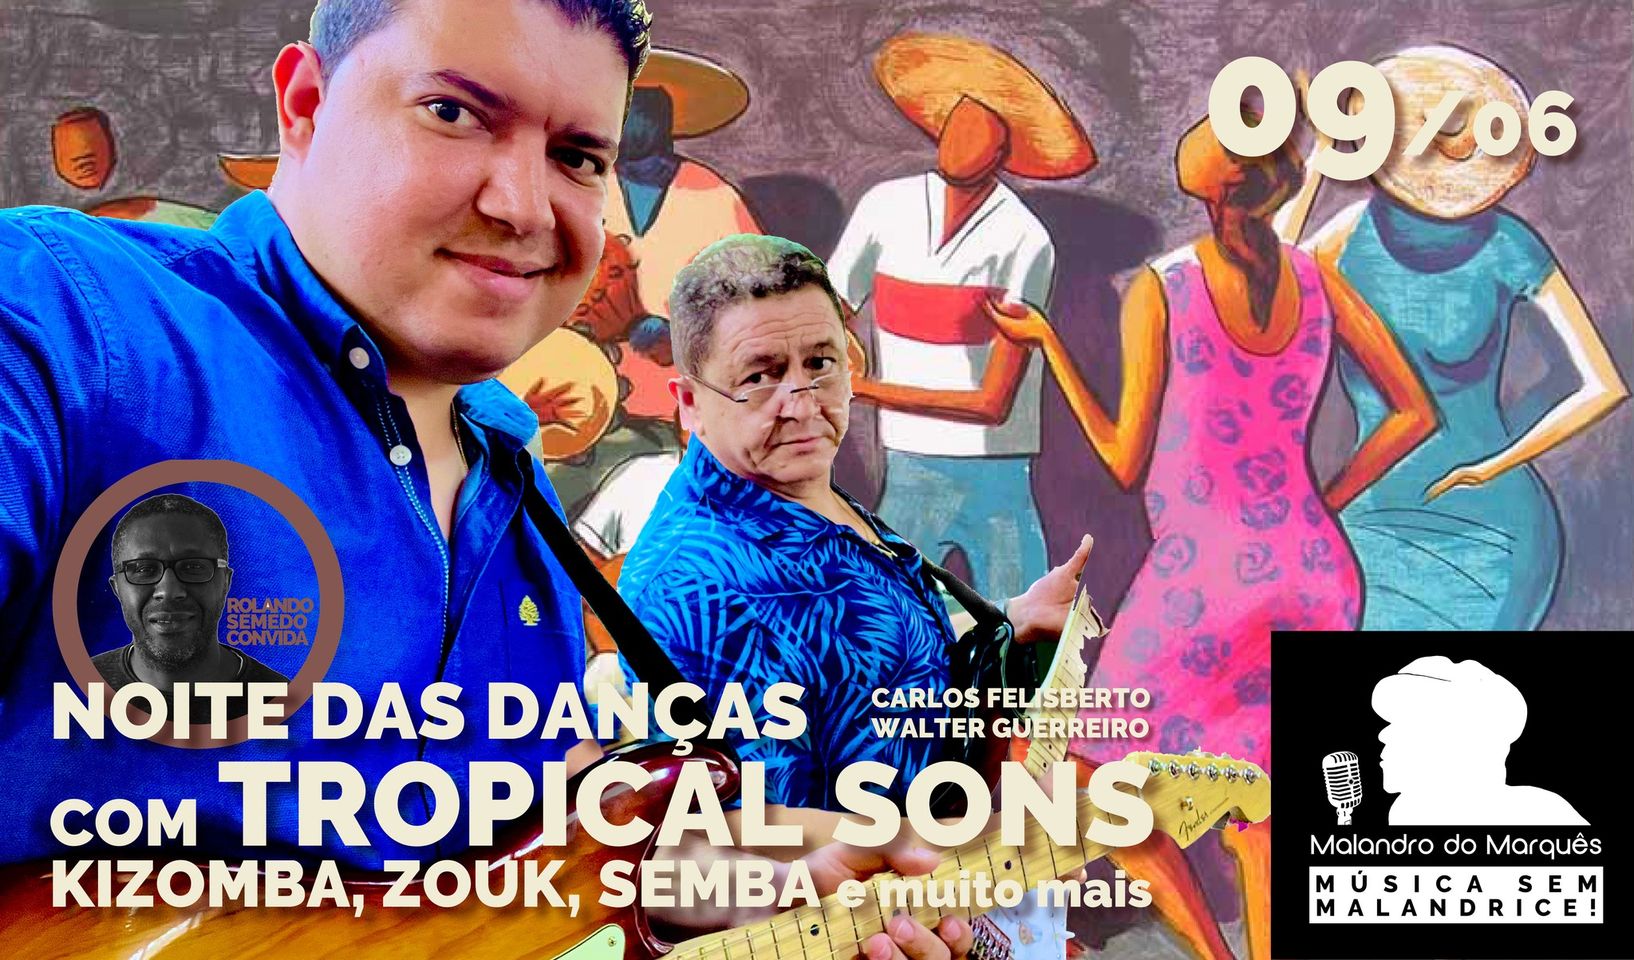 Noite das Danças com Tropical Sons. Kizomba, Zouk, Semba e muito mais Malandro do Marquês